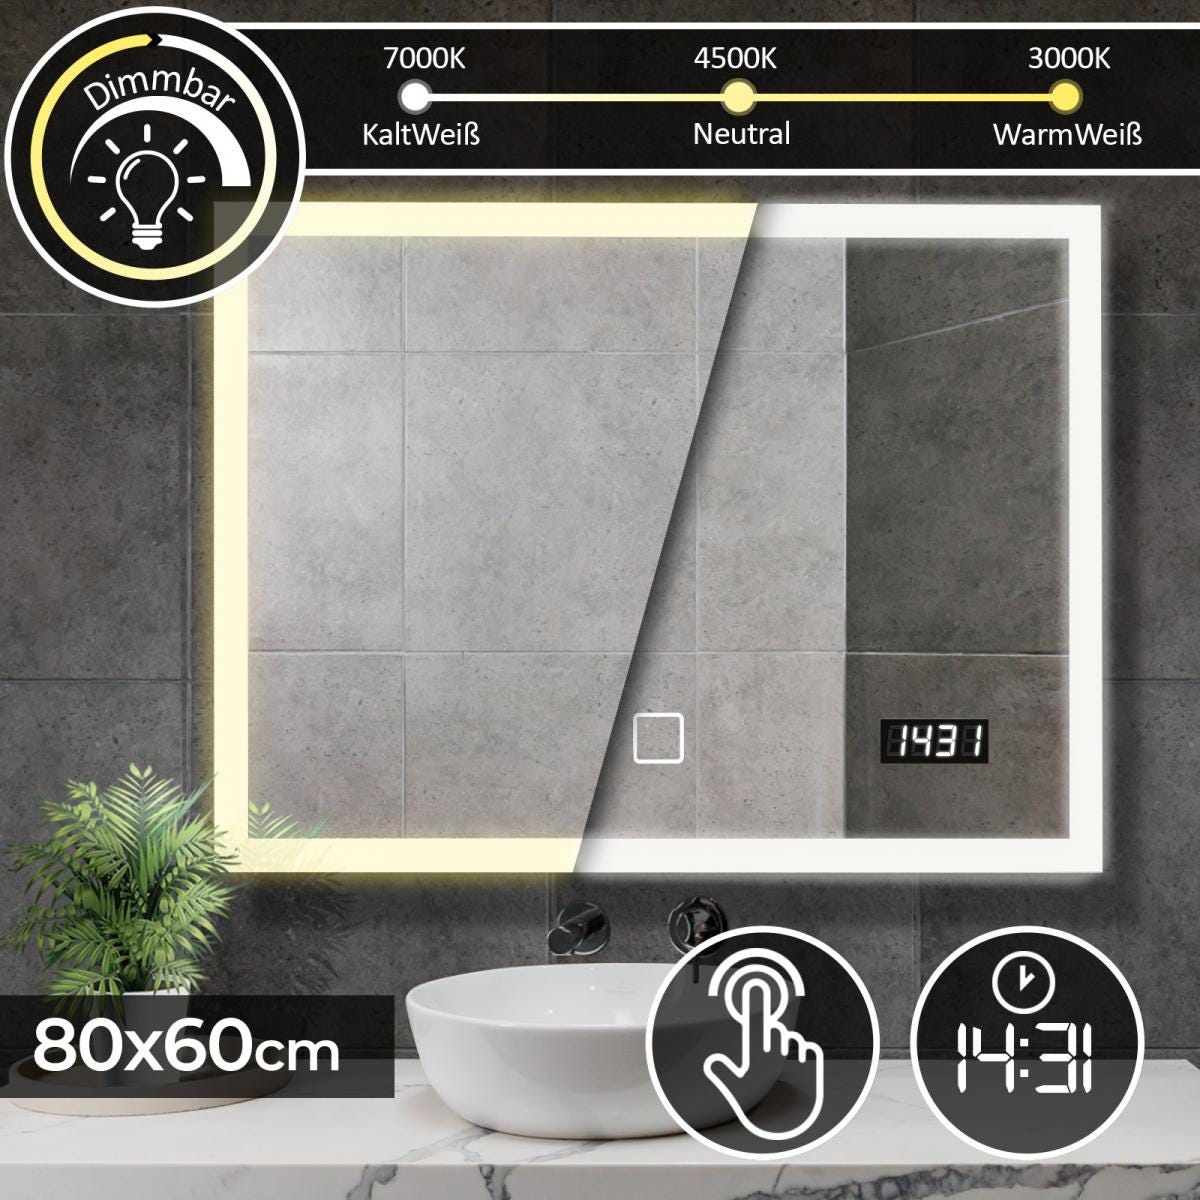 Miroir salle de bain led - 120 x 80 cm, cee:a++, tactile, mural, éclairage  blanc froid/chaud/neutre, fonction mémoire, anti-buée